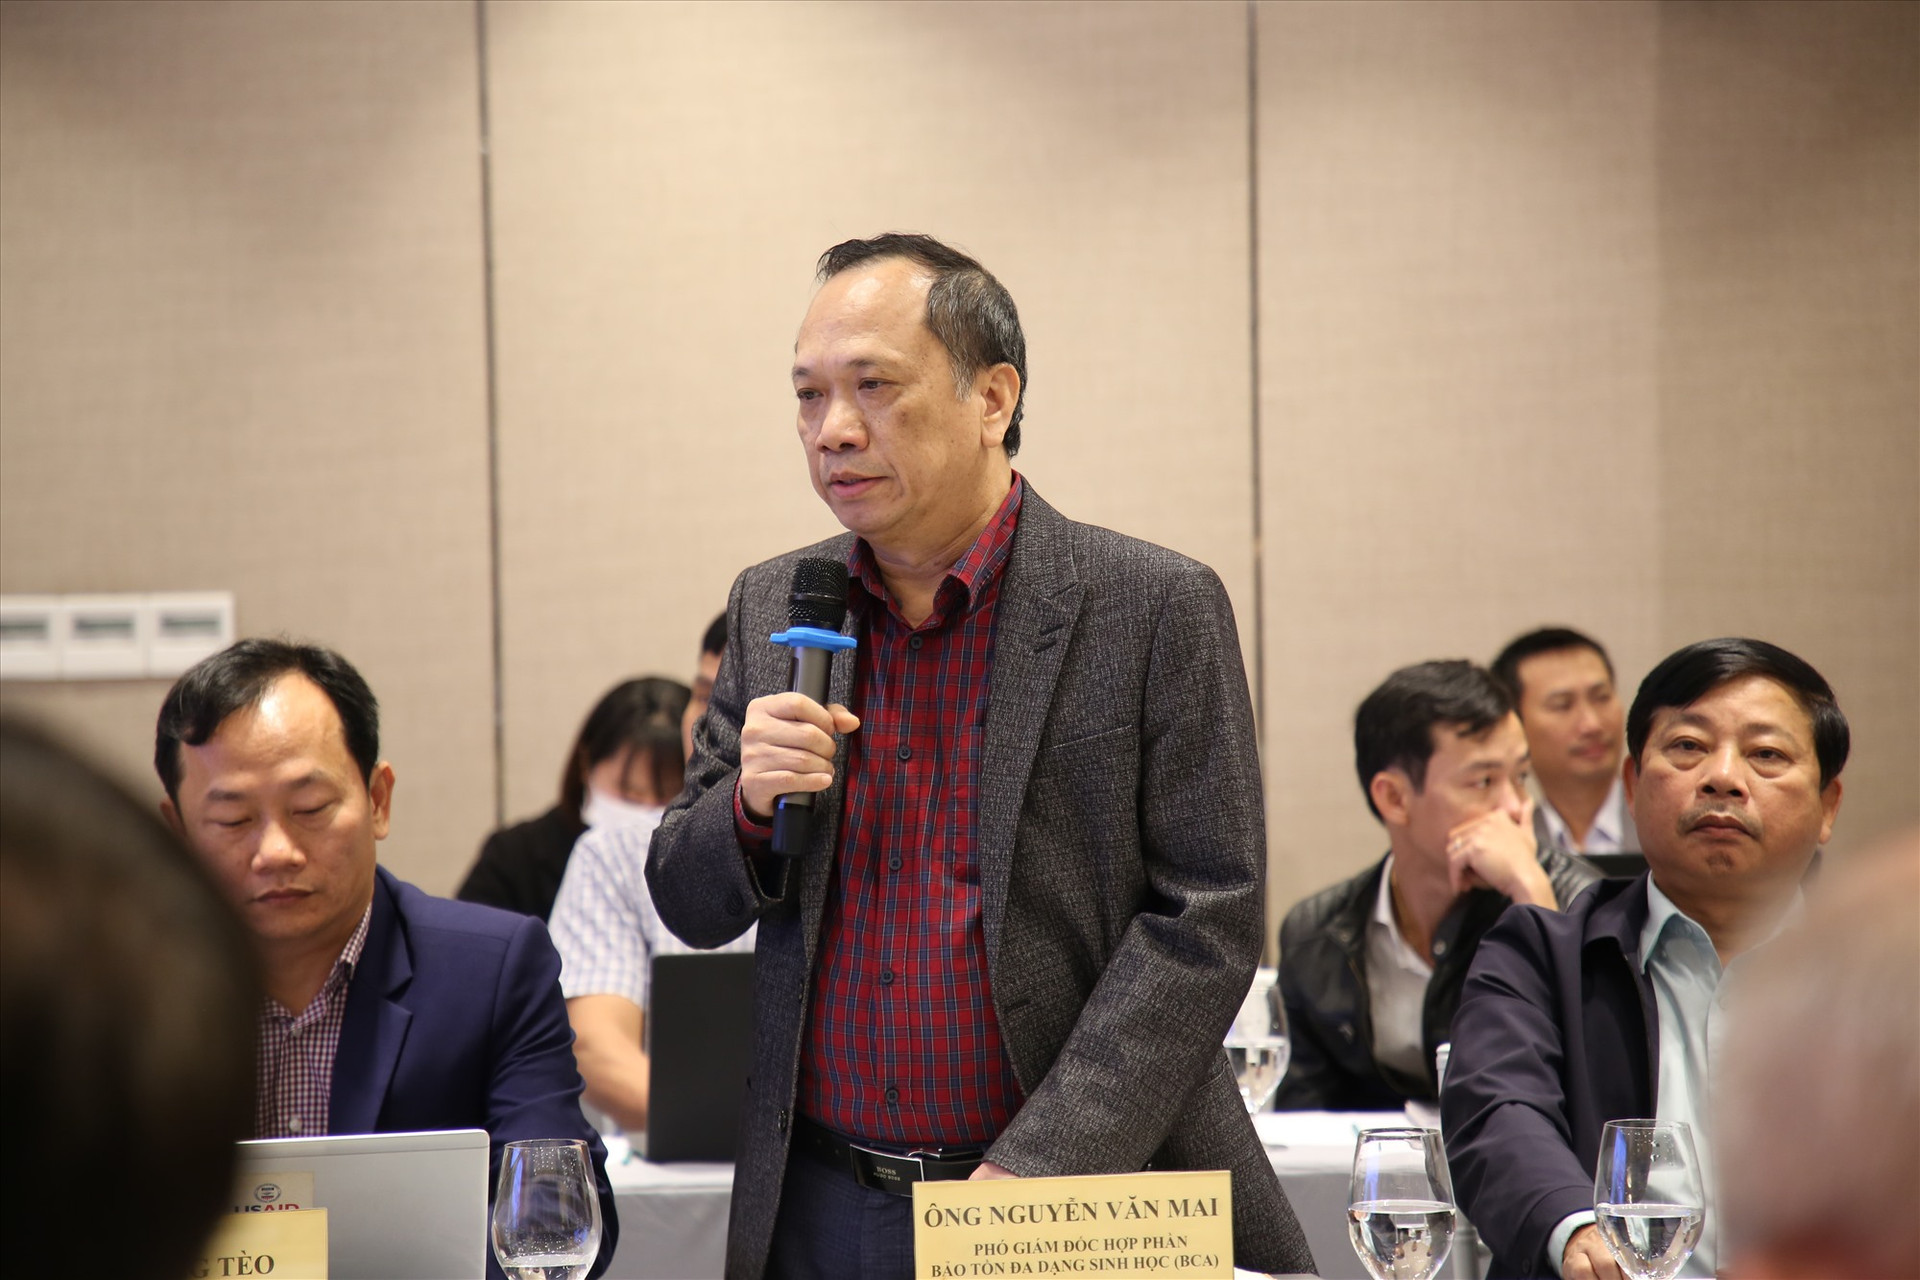 Đại biểu chia sẻ về công tác quản lý rừng bền vững trên địa bàn Quảng Nam. Ảnh: A.N